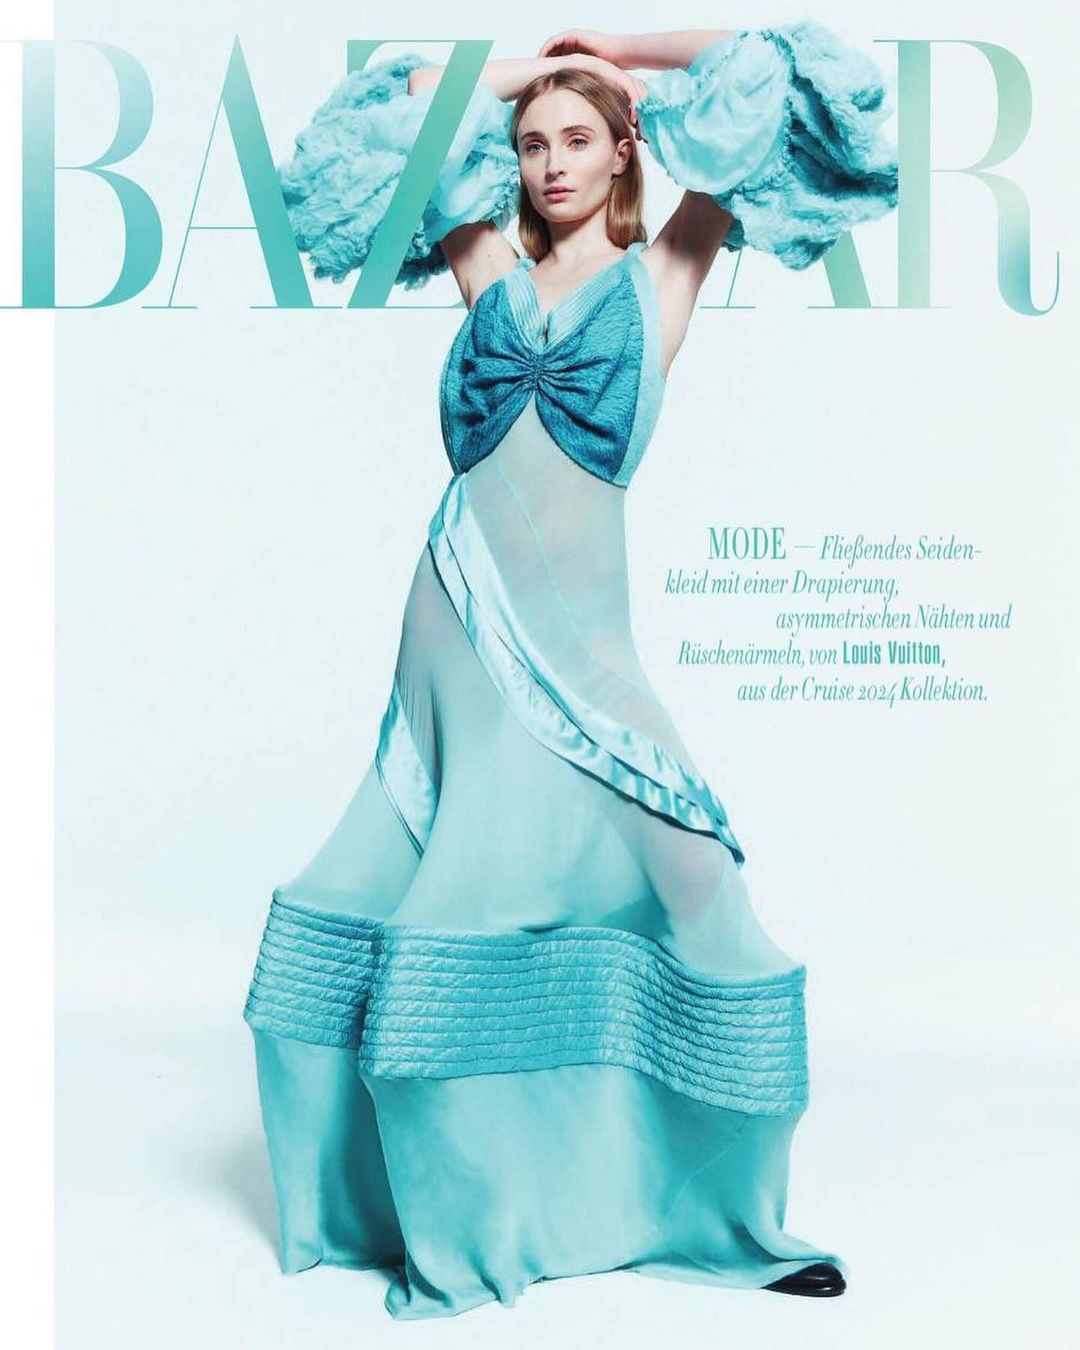 Sophie Turner featured in Bazaar magazine